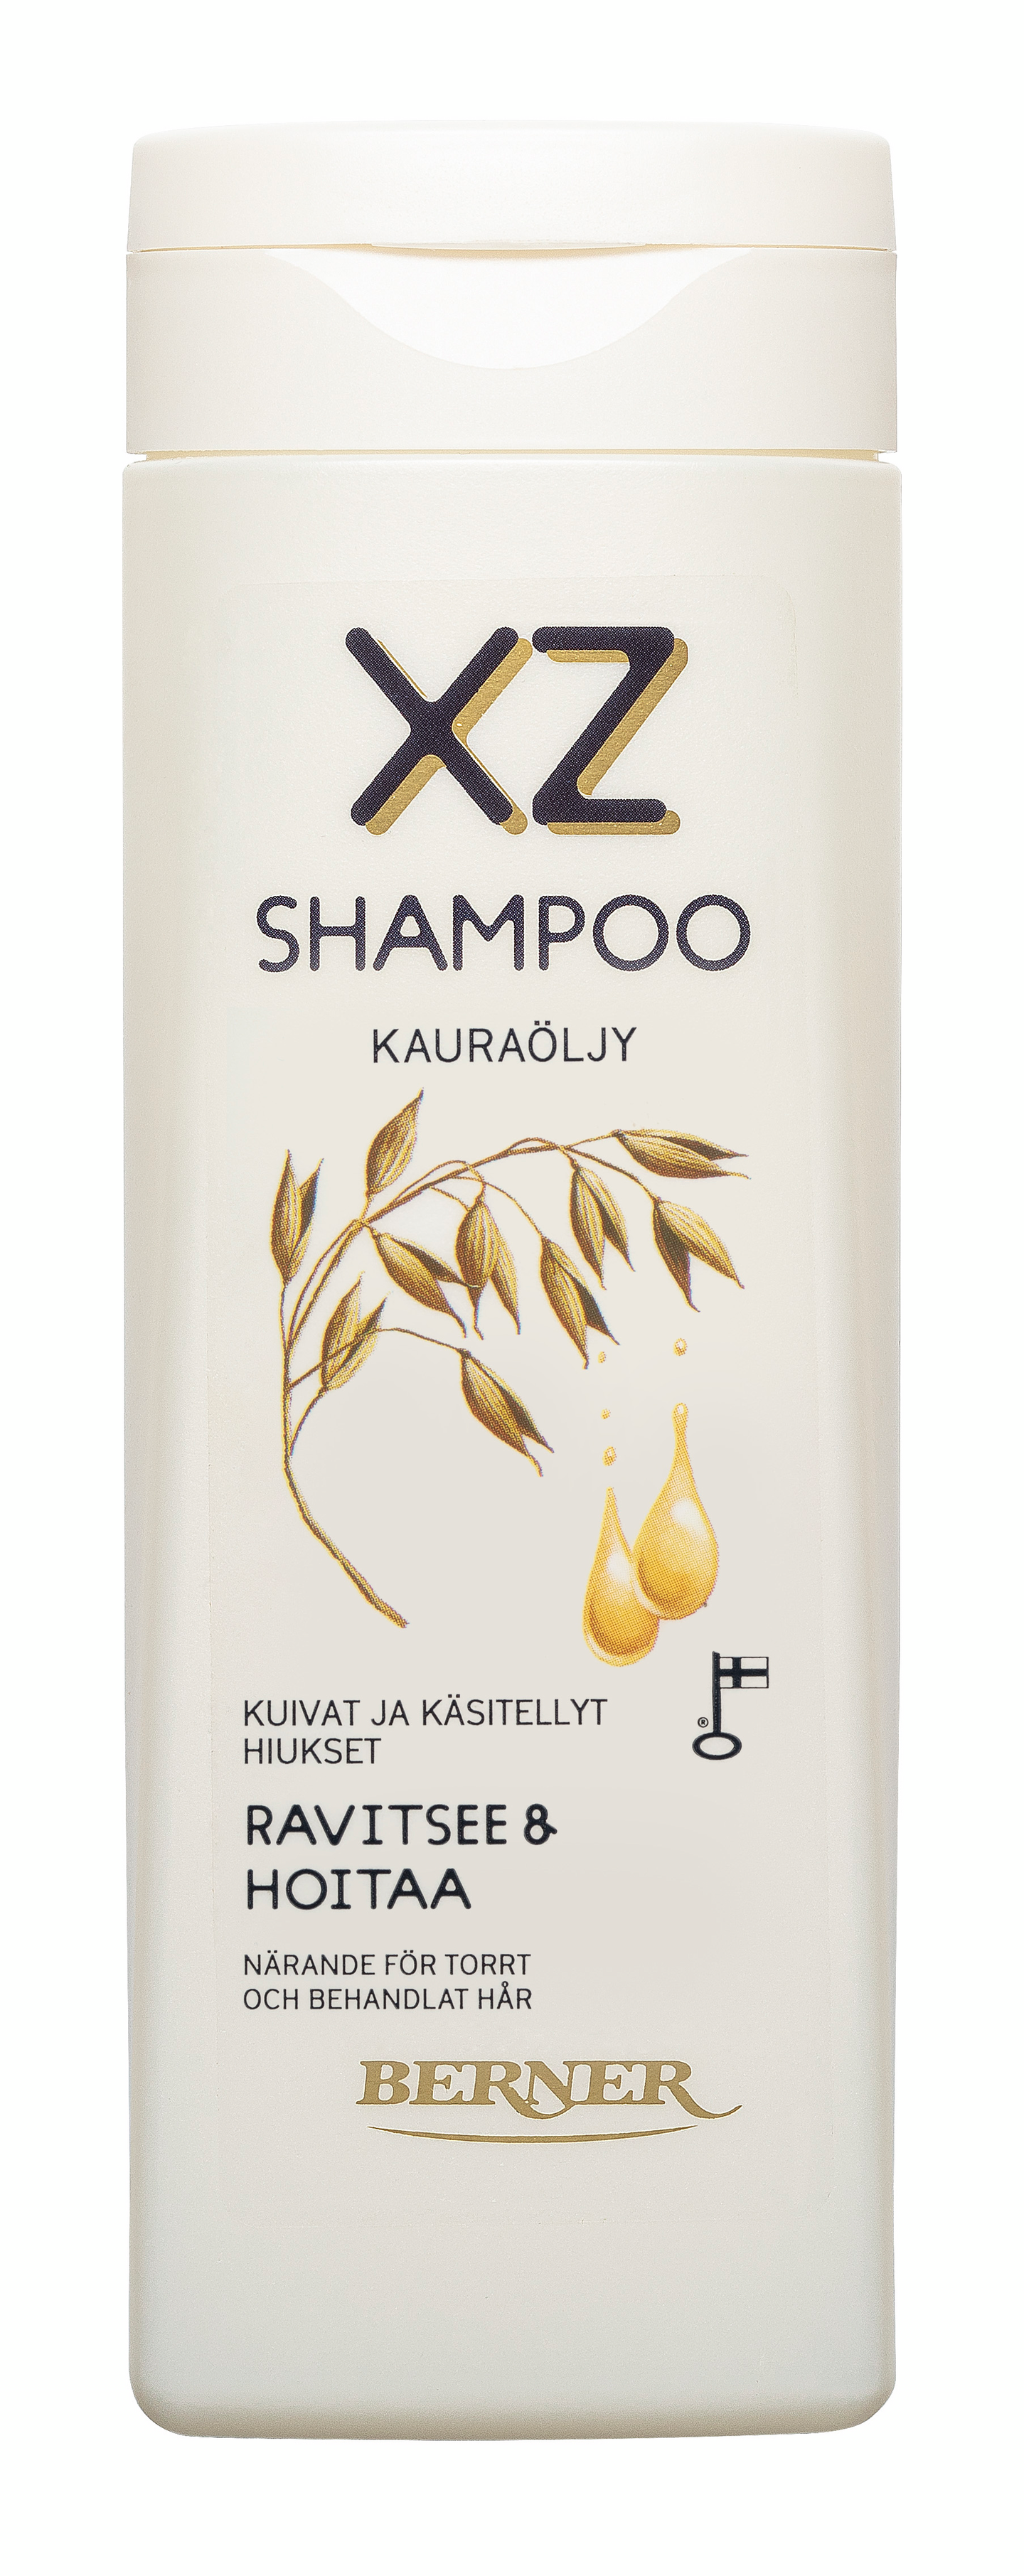 XZ shampoo 250ml Kauraöljy